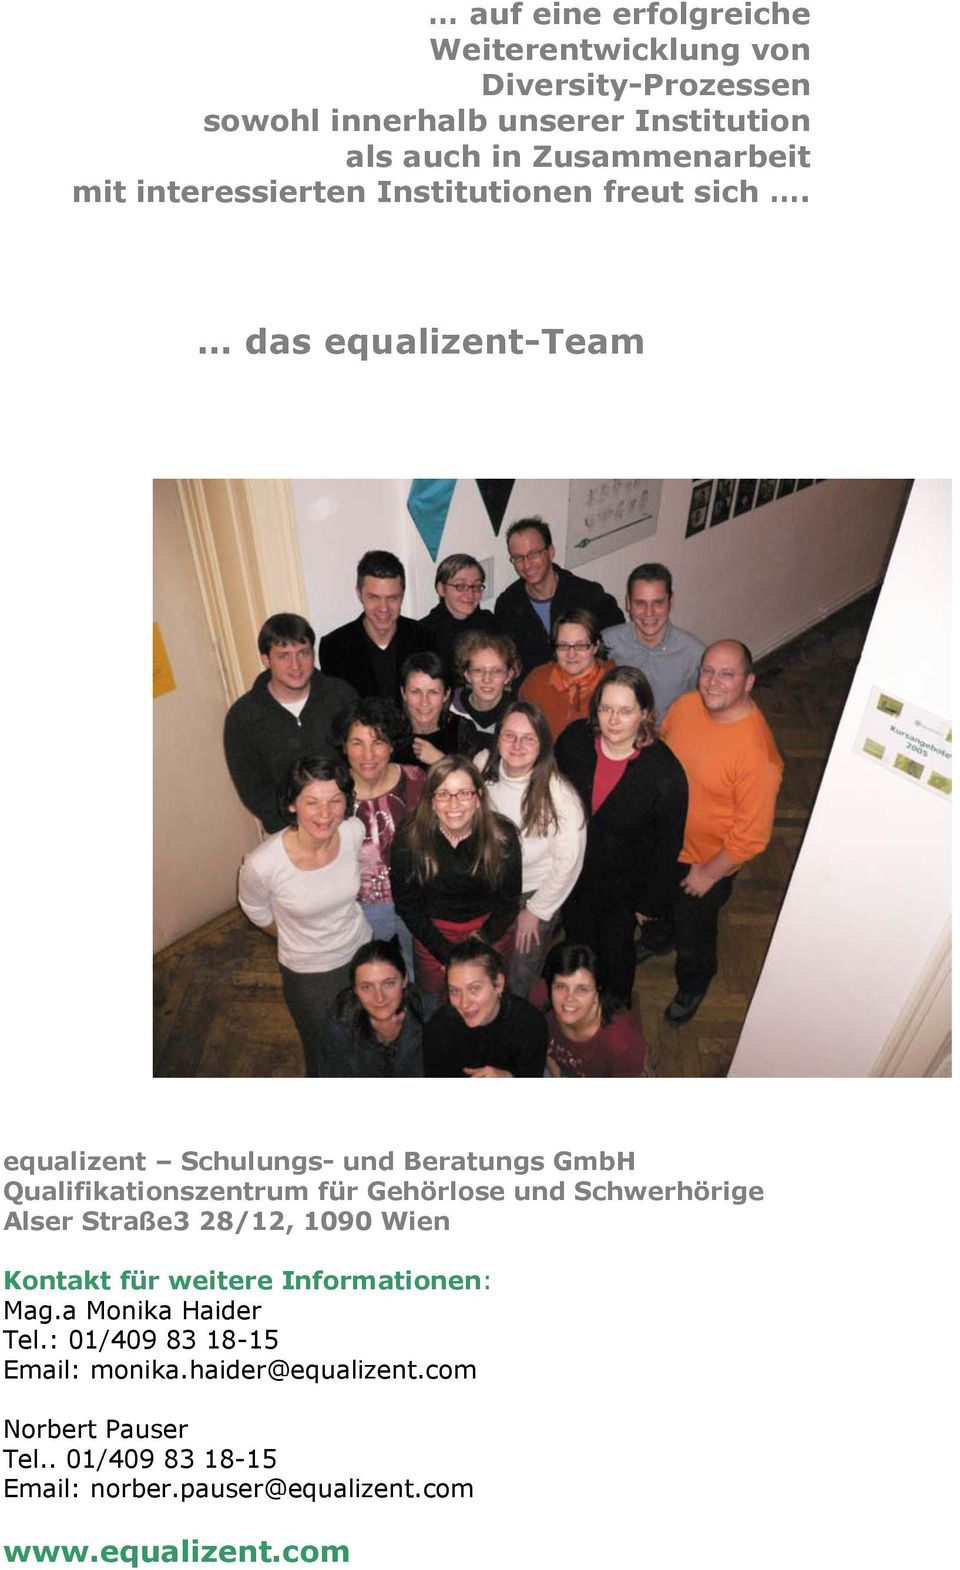 das equalizent-team equalizent Schulungs- und Beratungs GmbH Alser Straße3 28/12, 1090 Wien Kontakt für weitere